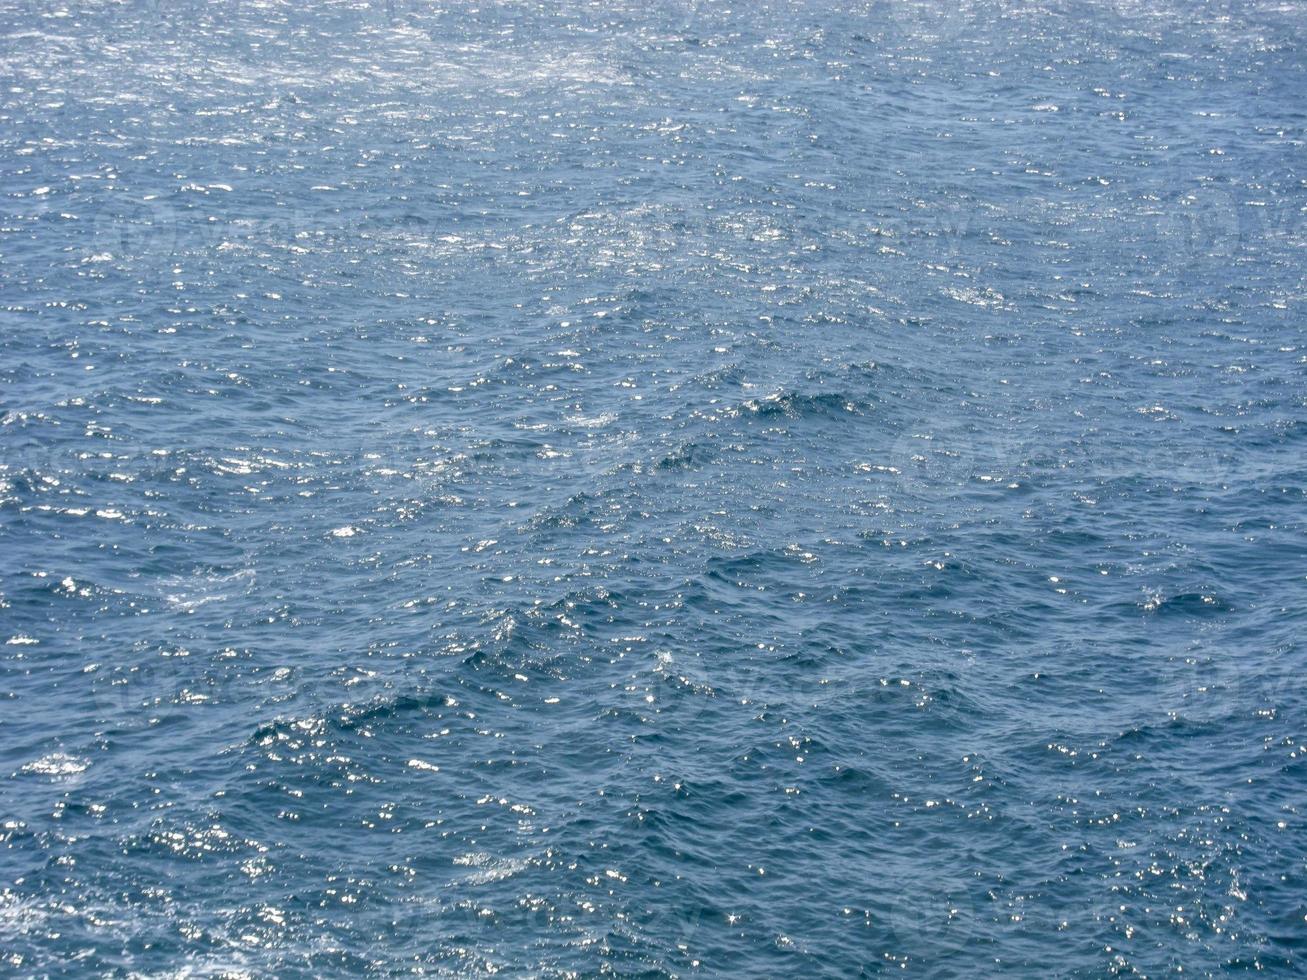 primer plano de agua de mar foto